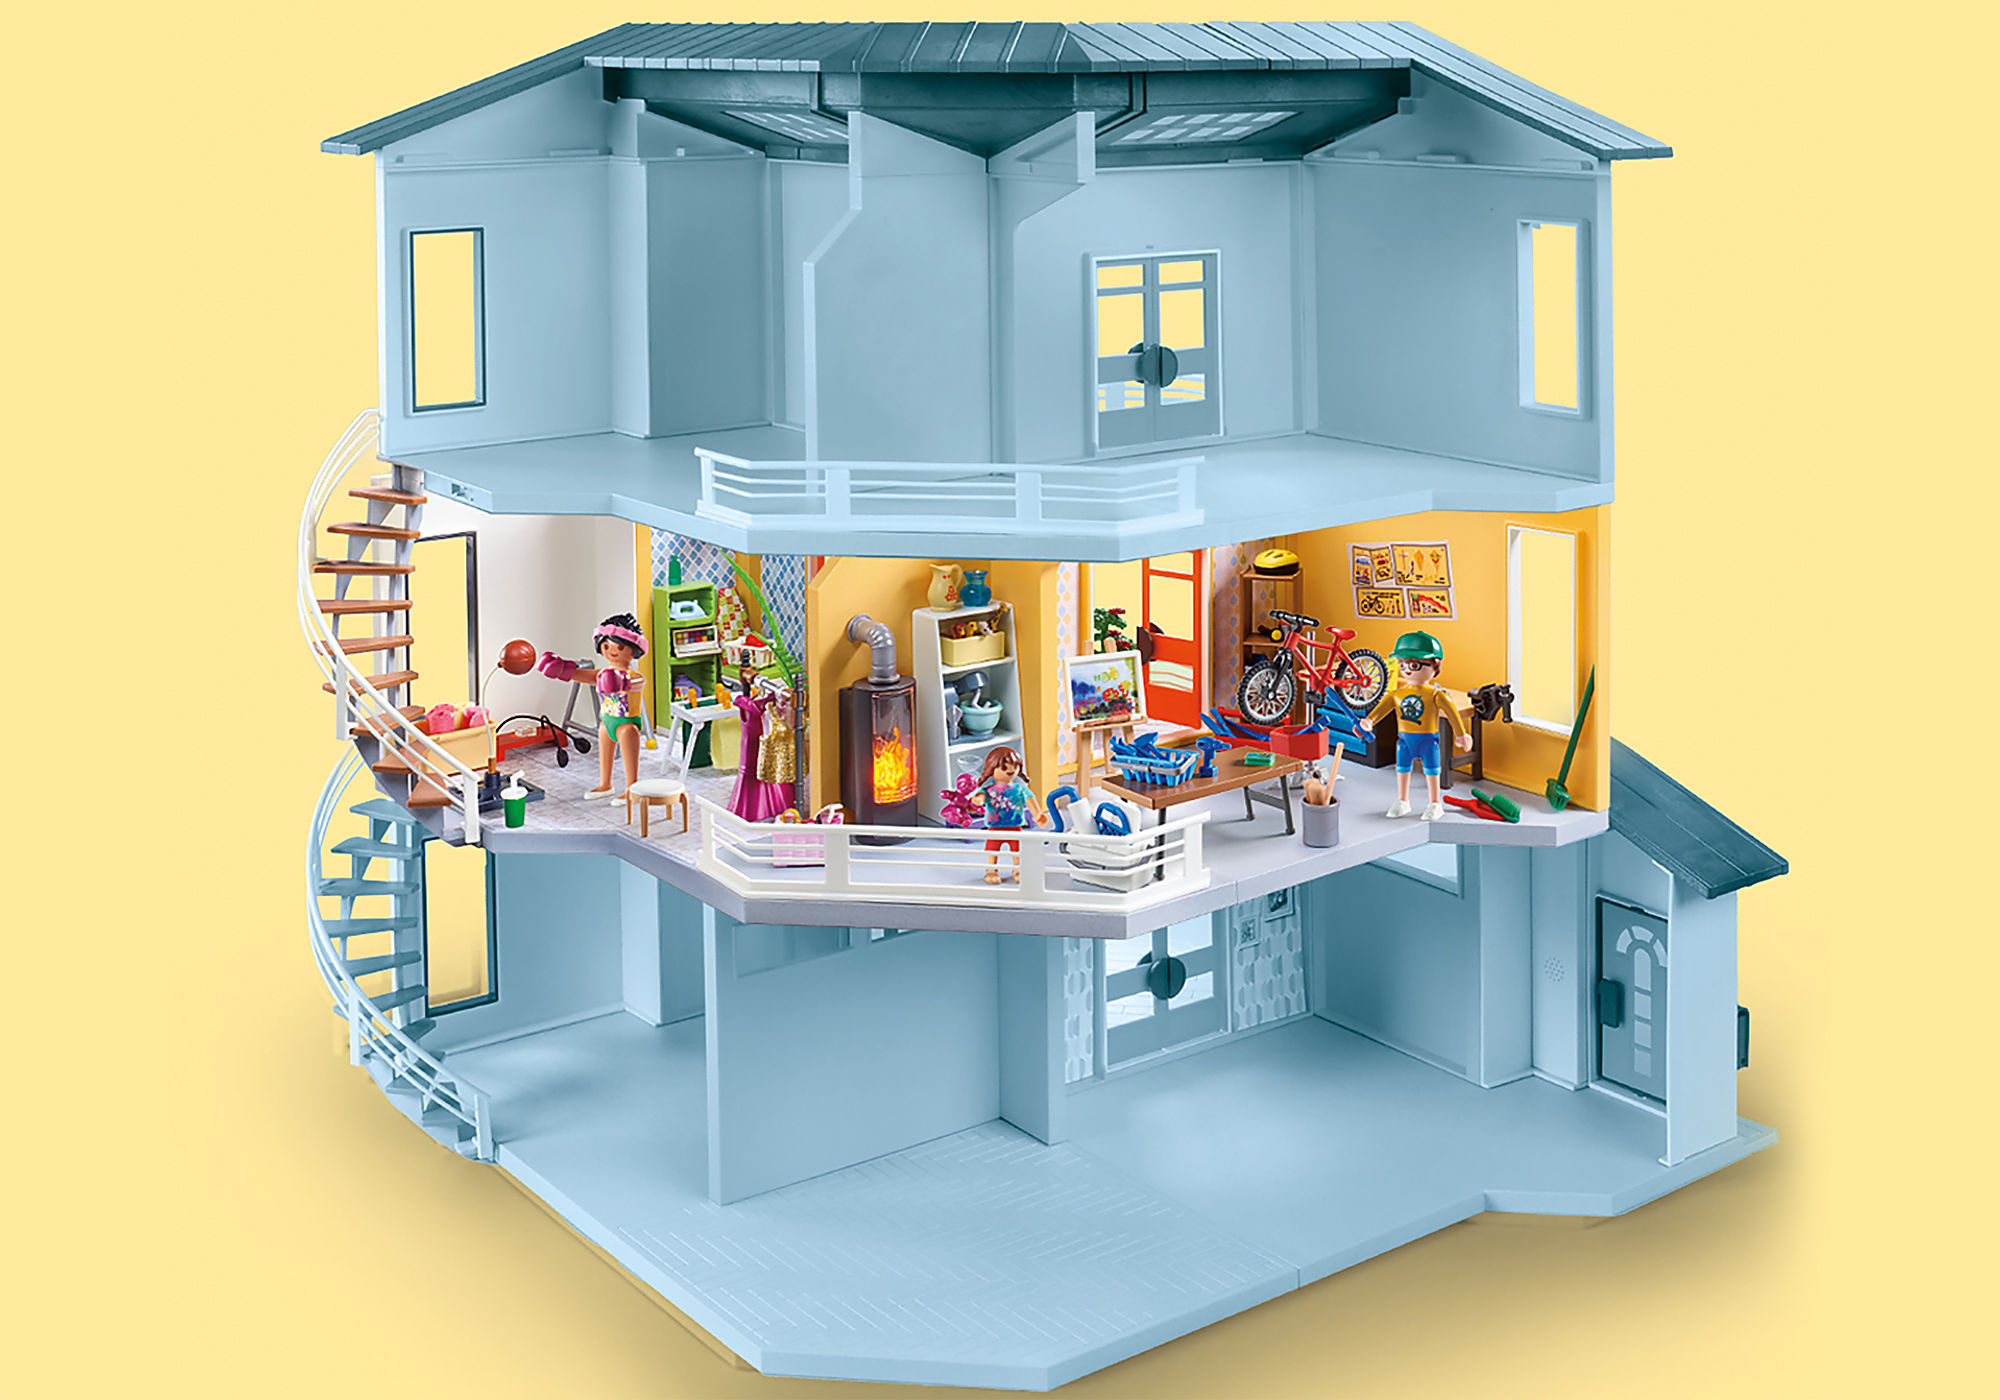 Playmobil City Life, Stort utbud av designermärken